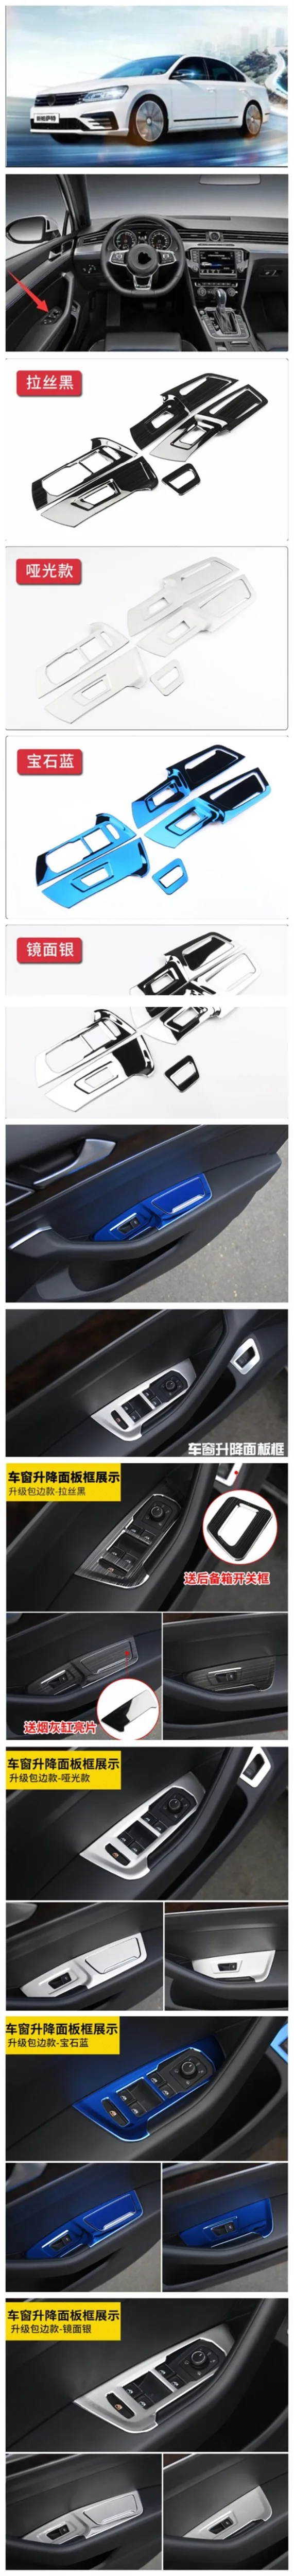 Для Volkswagen Passat B8 внутренняя отделка специальный стеклянный переключатель декоративный черный титановый материал из нержавеющей стали